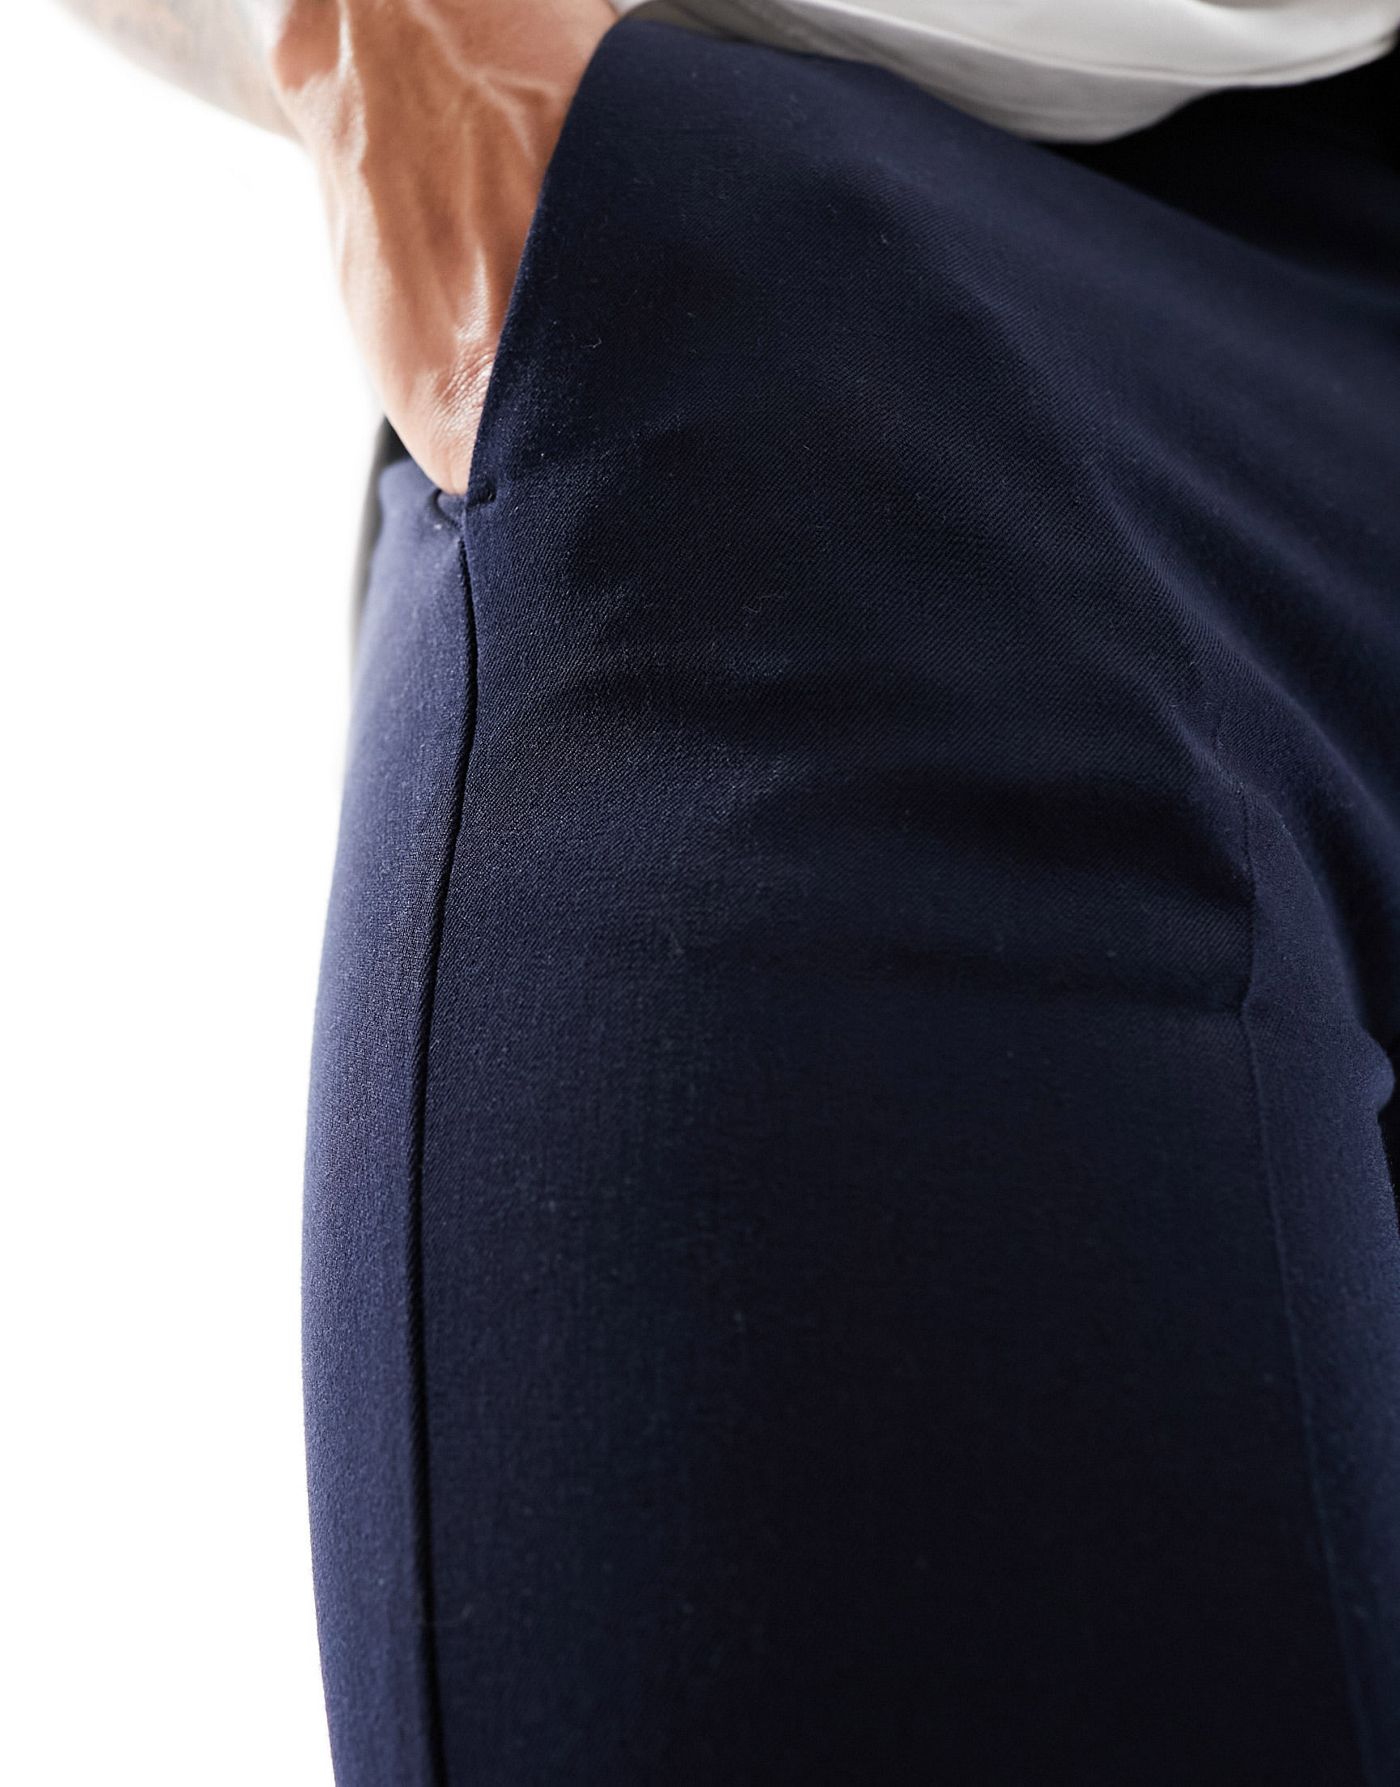 ASOS DESIGN skinny smart trouser in navy